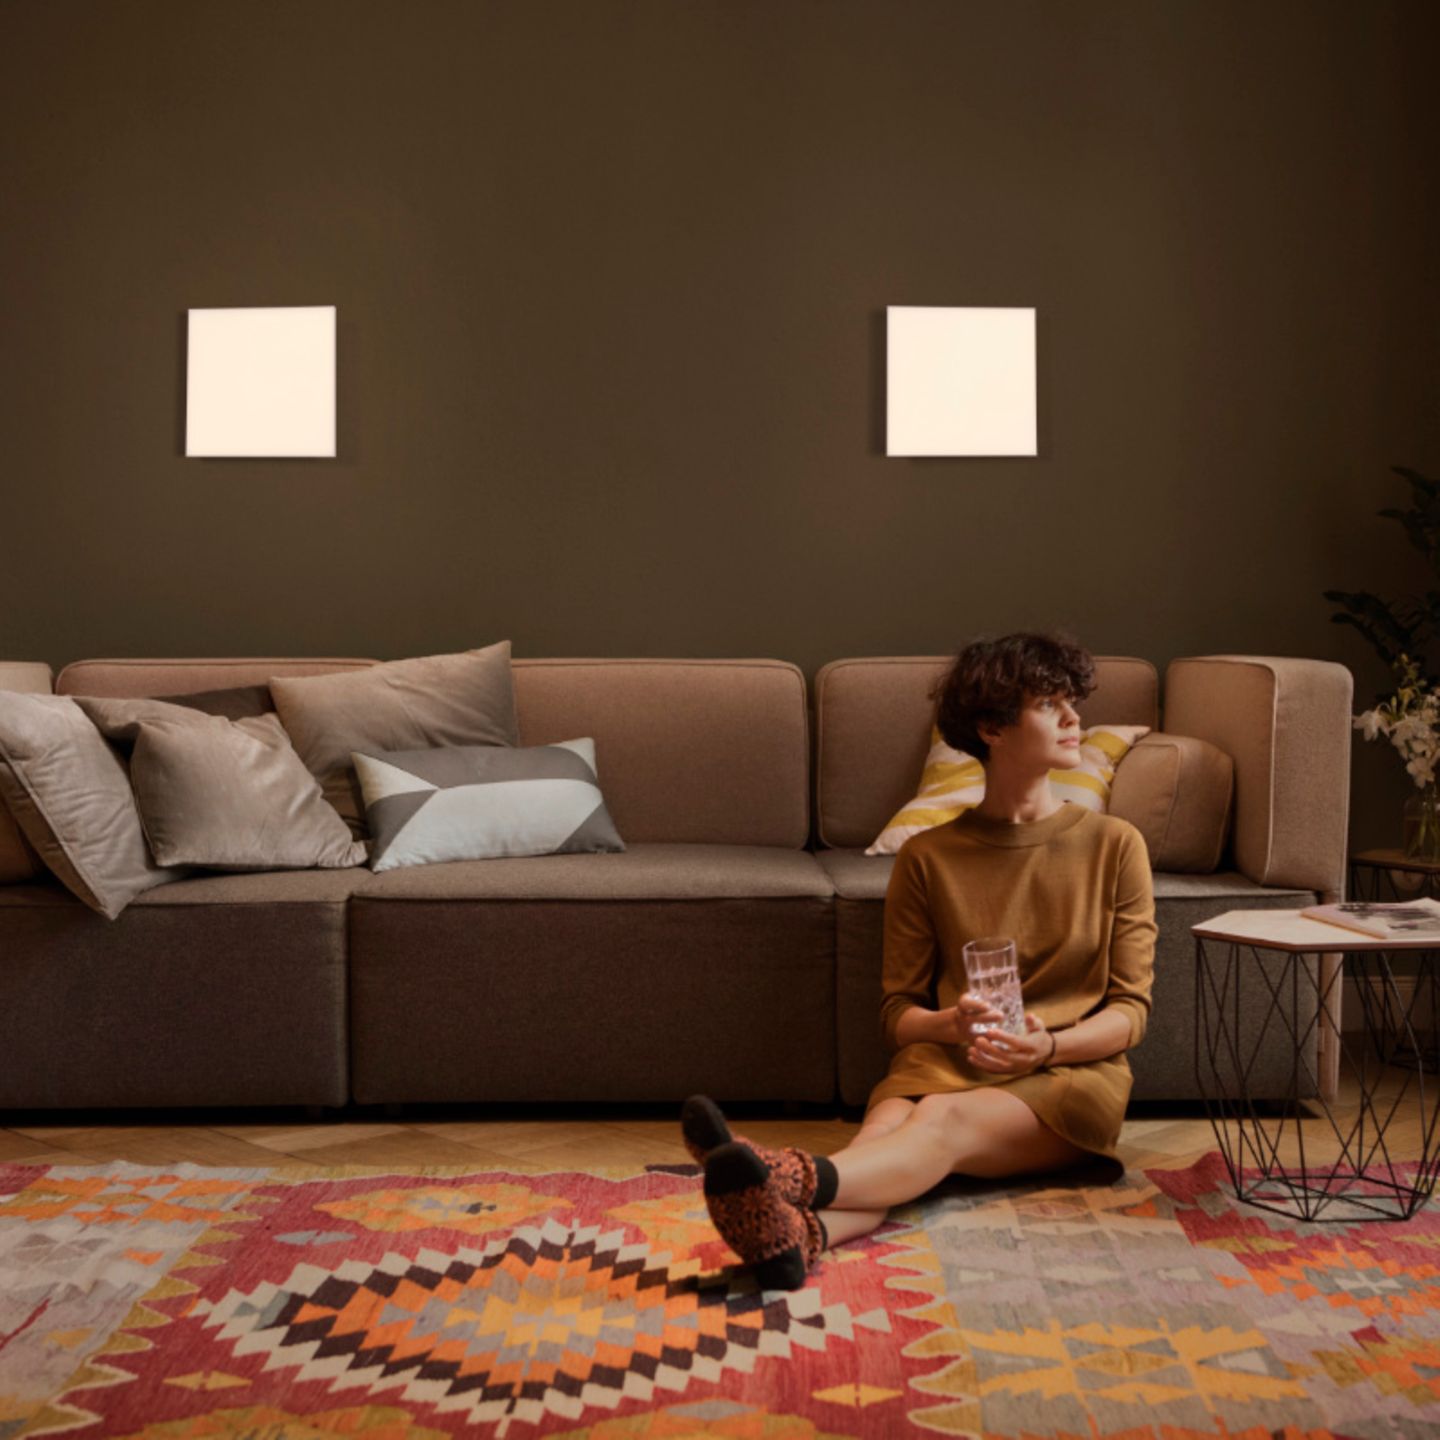 RGB LED Glas Decken Leuchten Wohn Zimmer Fernbedienung Deko Steine Lampe dimmbar 